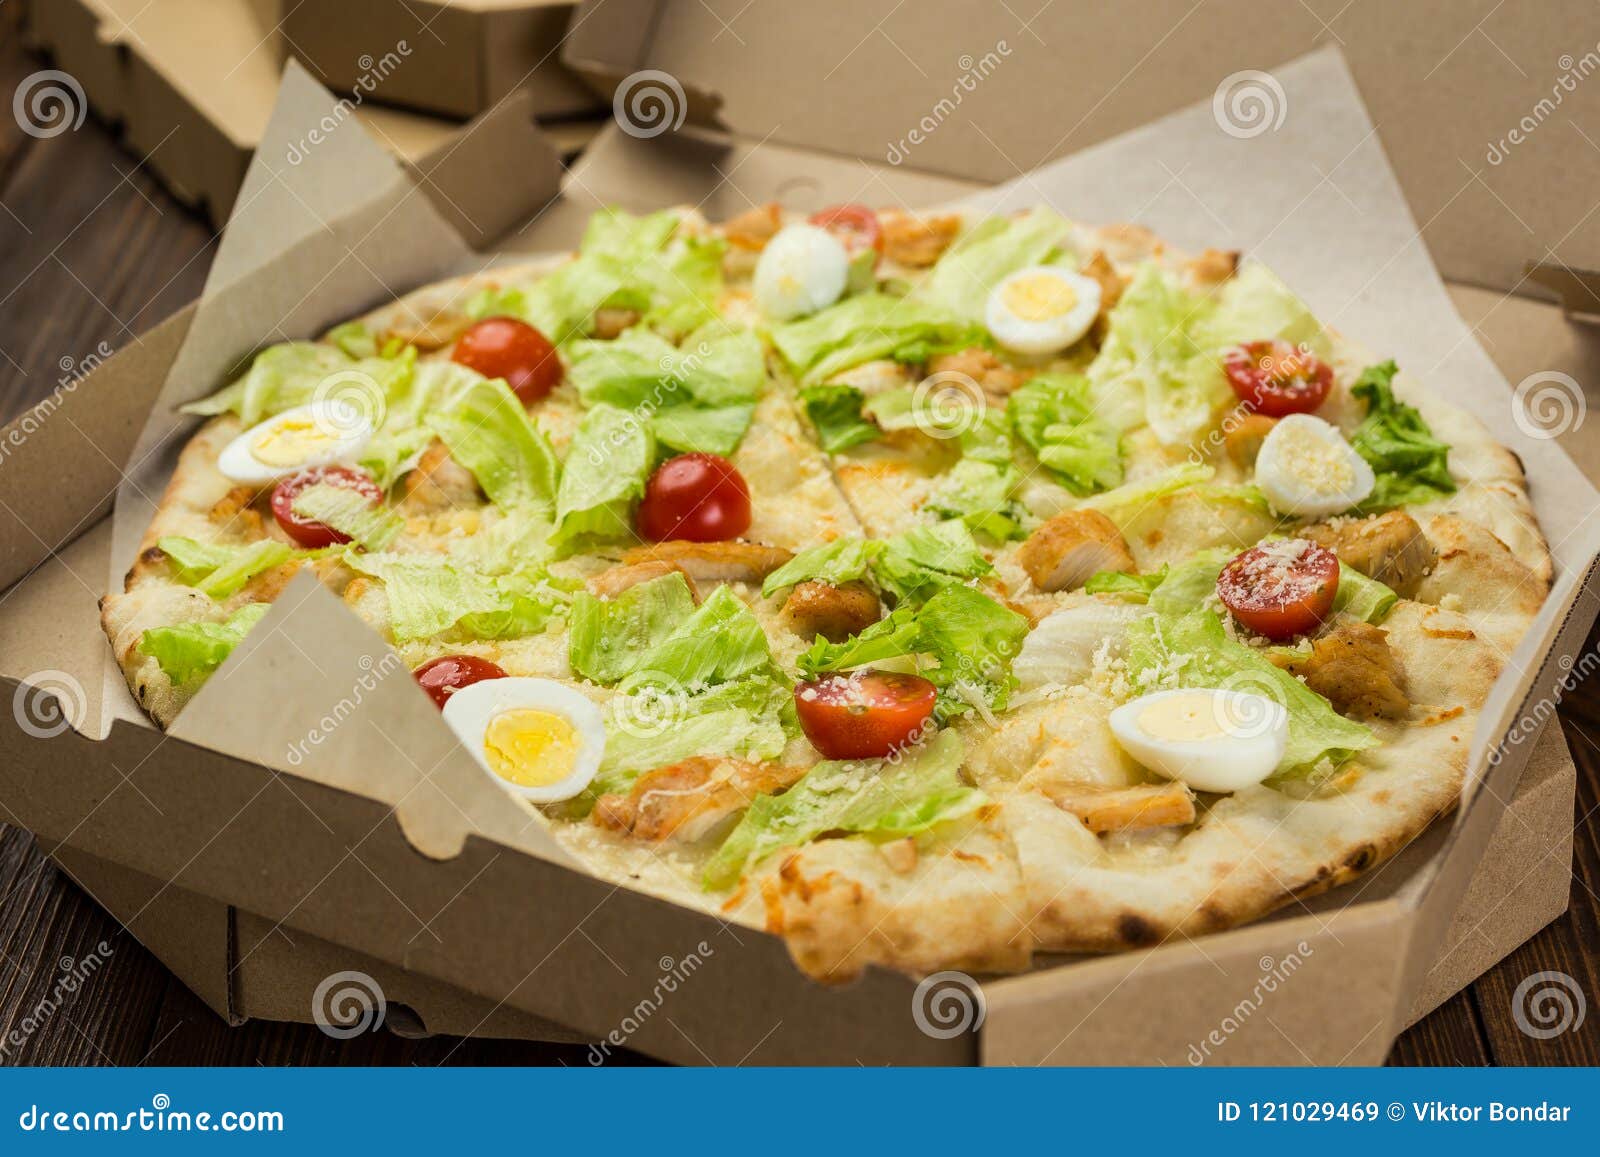 цезарь пицца с ветчиной и грибами замороженная фото 53